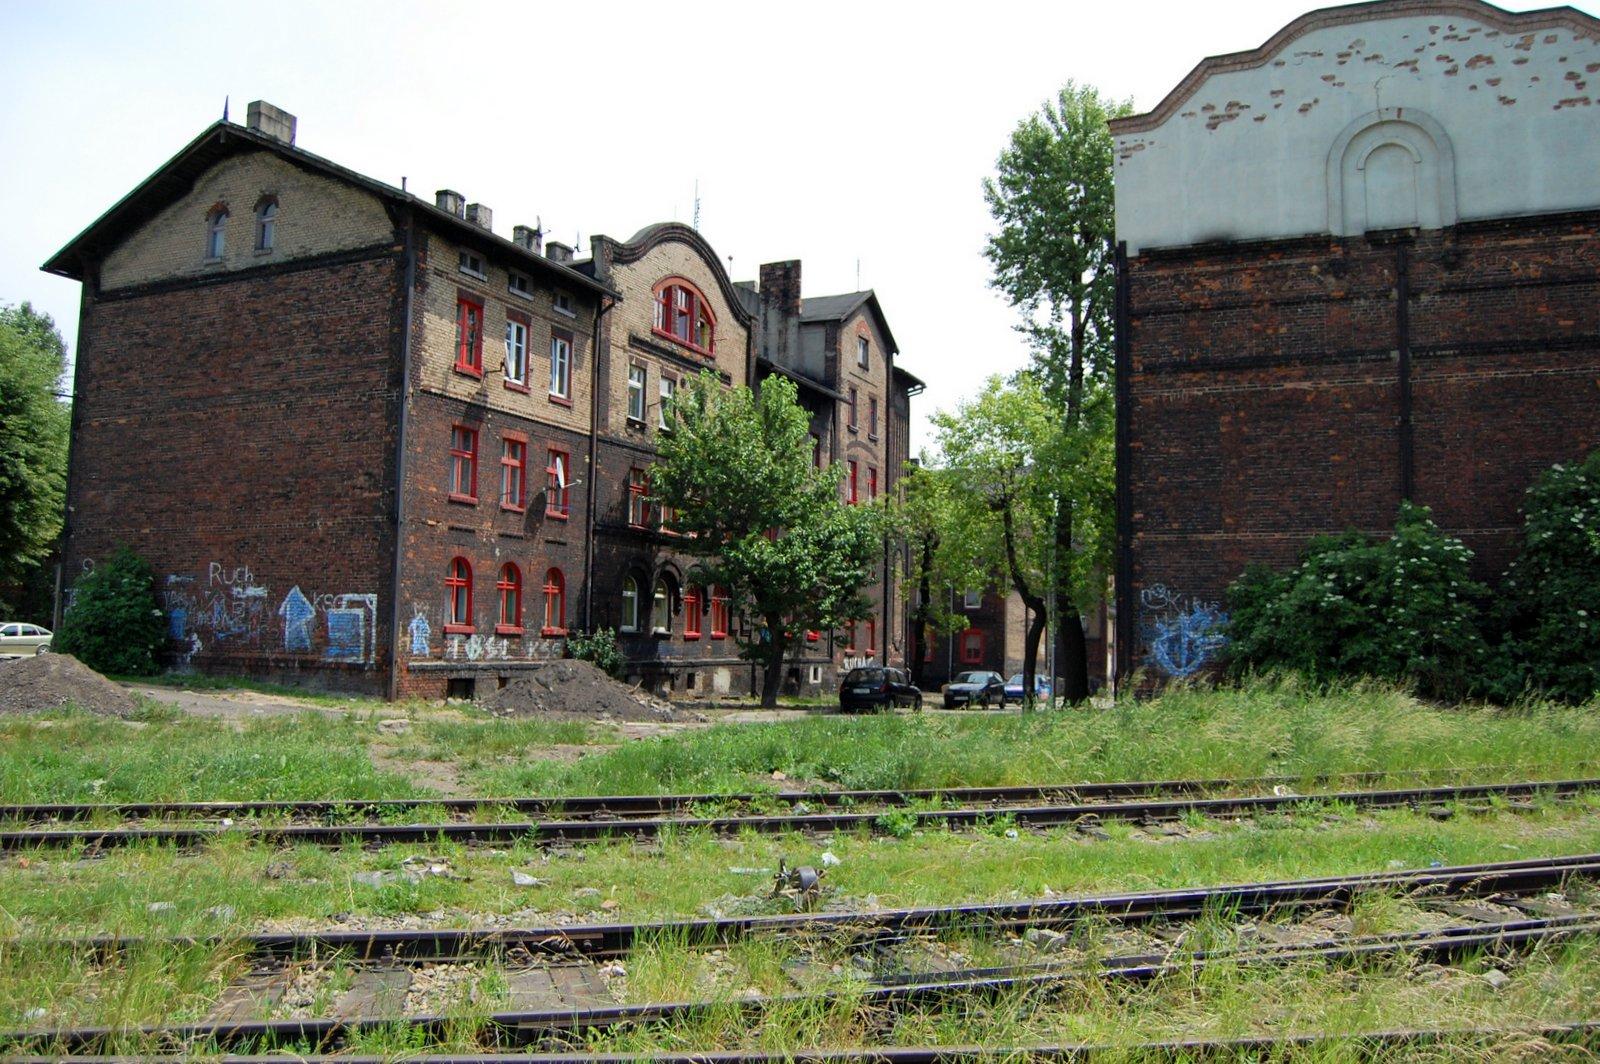 Tory kolejowe obok domów z czerwonej cegły